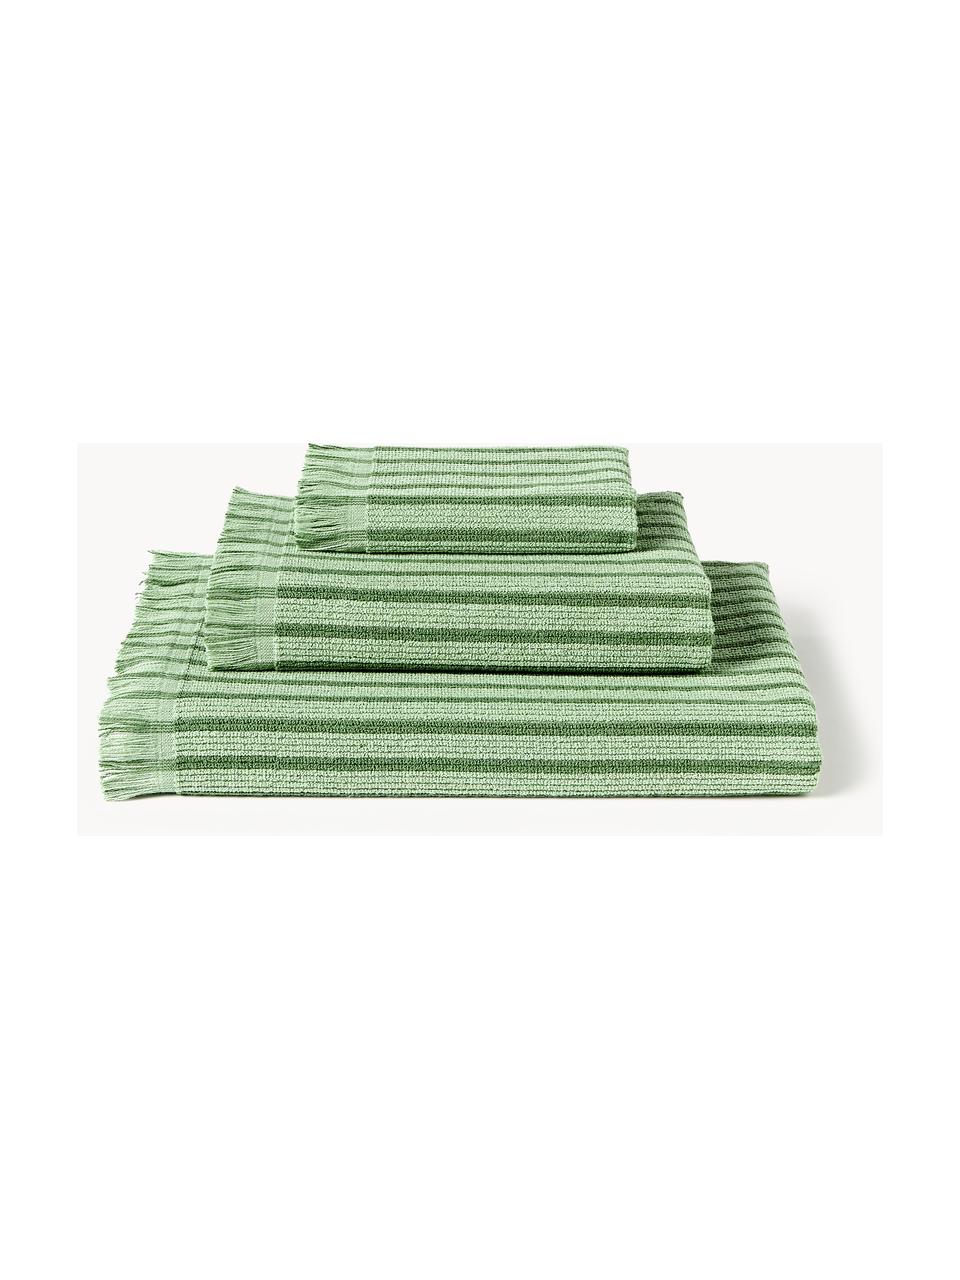 Serviettes de toilette Irma, tailles variées, Vert, 4 pièces (2 serviettes de toilette et 2 draps de bain)